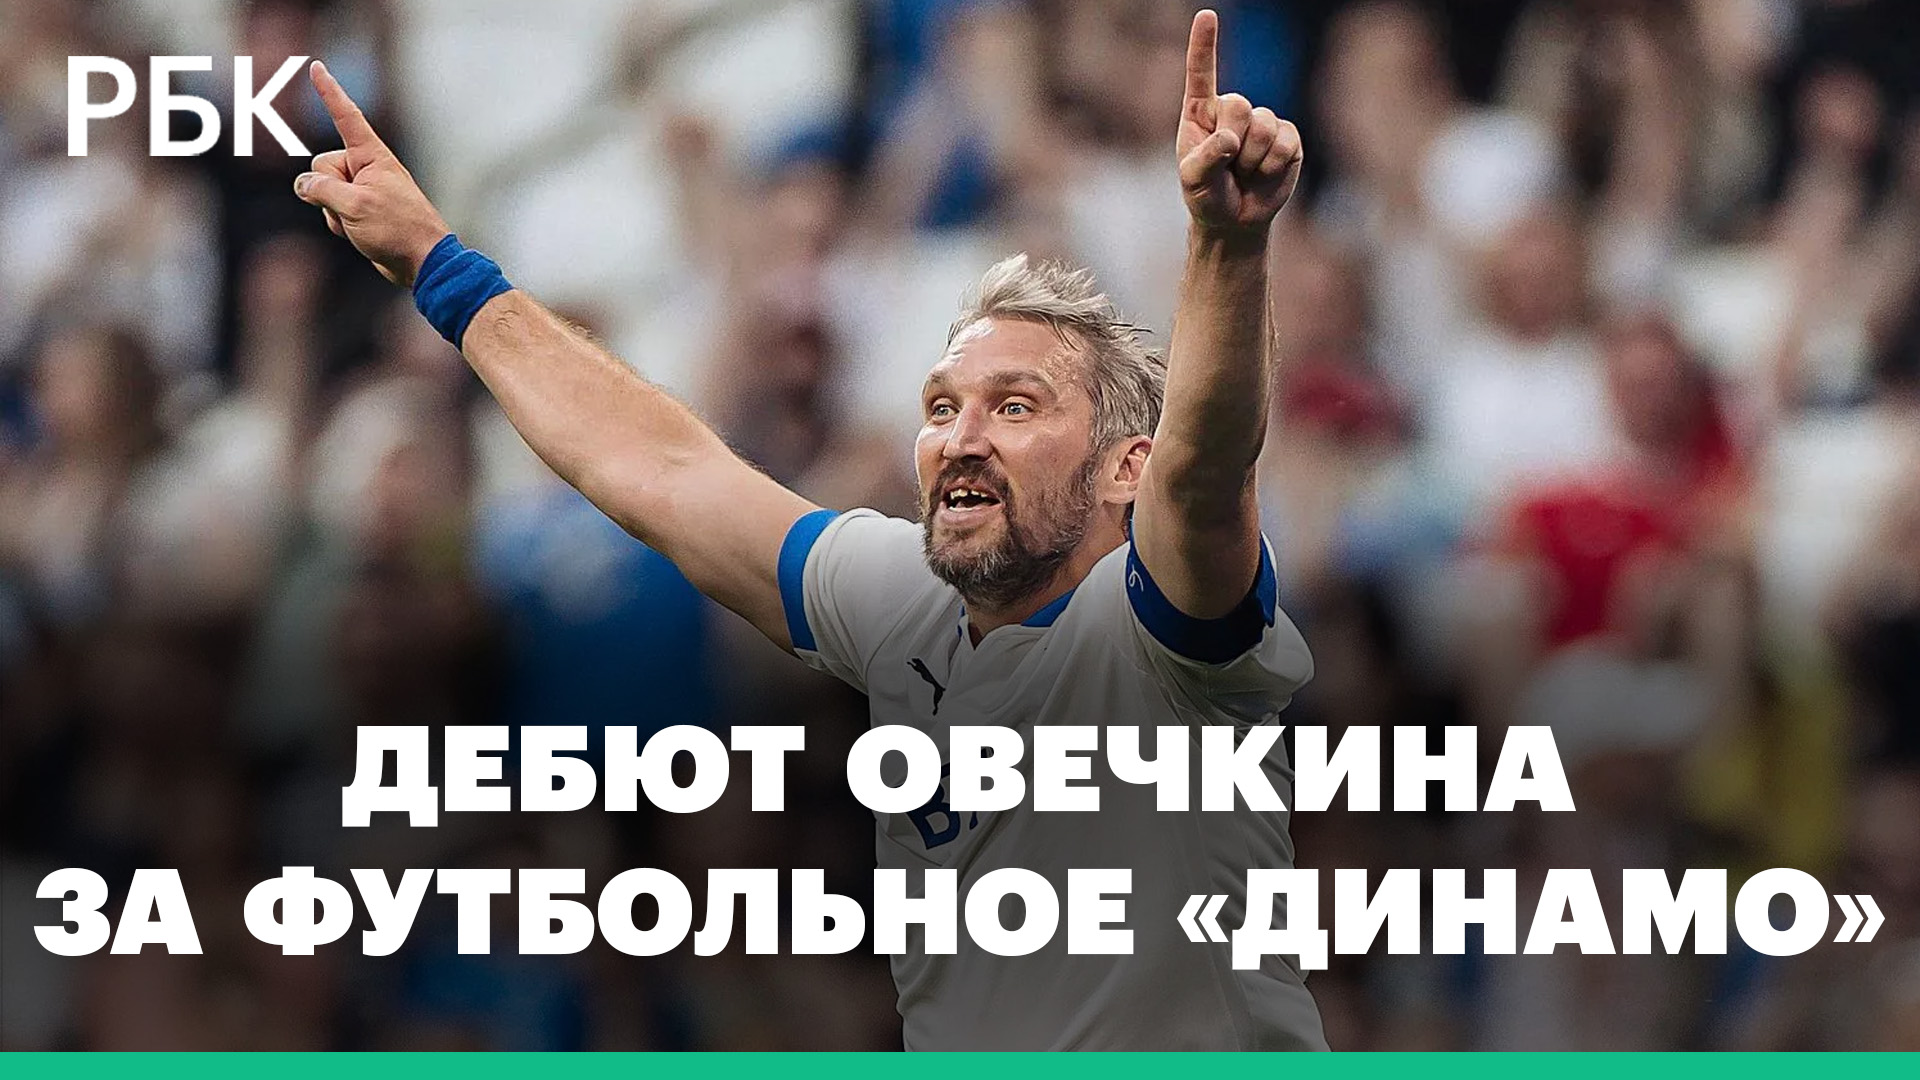 Как Овечкин дебютировал за футбольное «Динамо». Видео